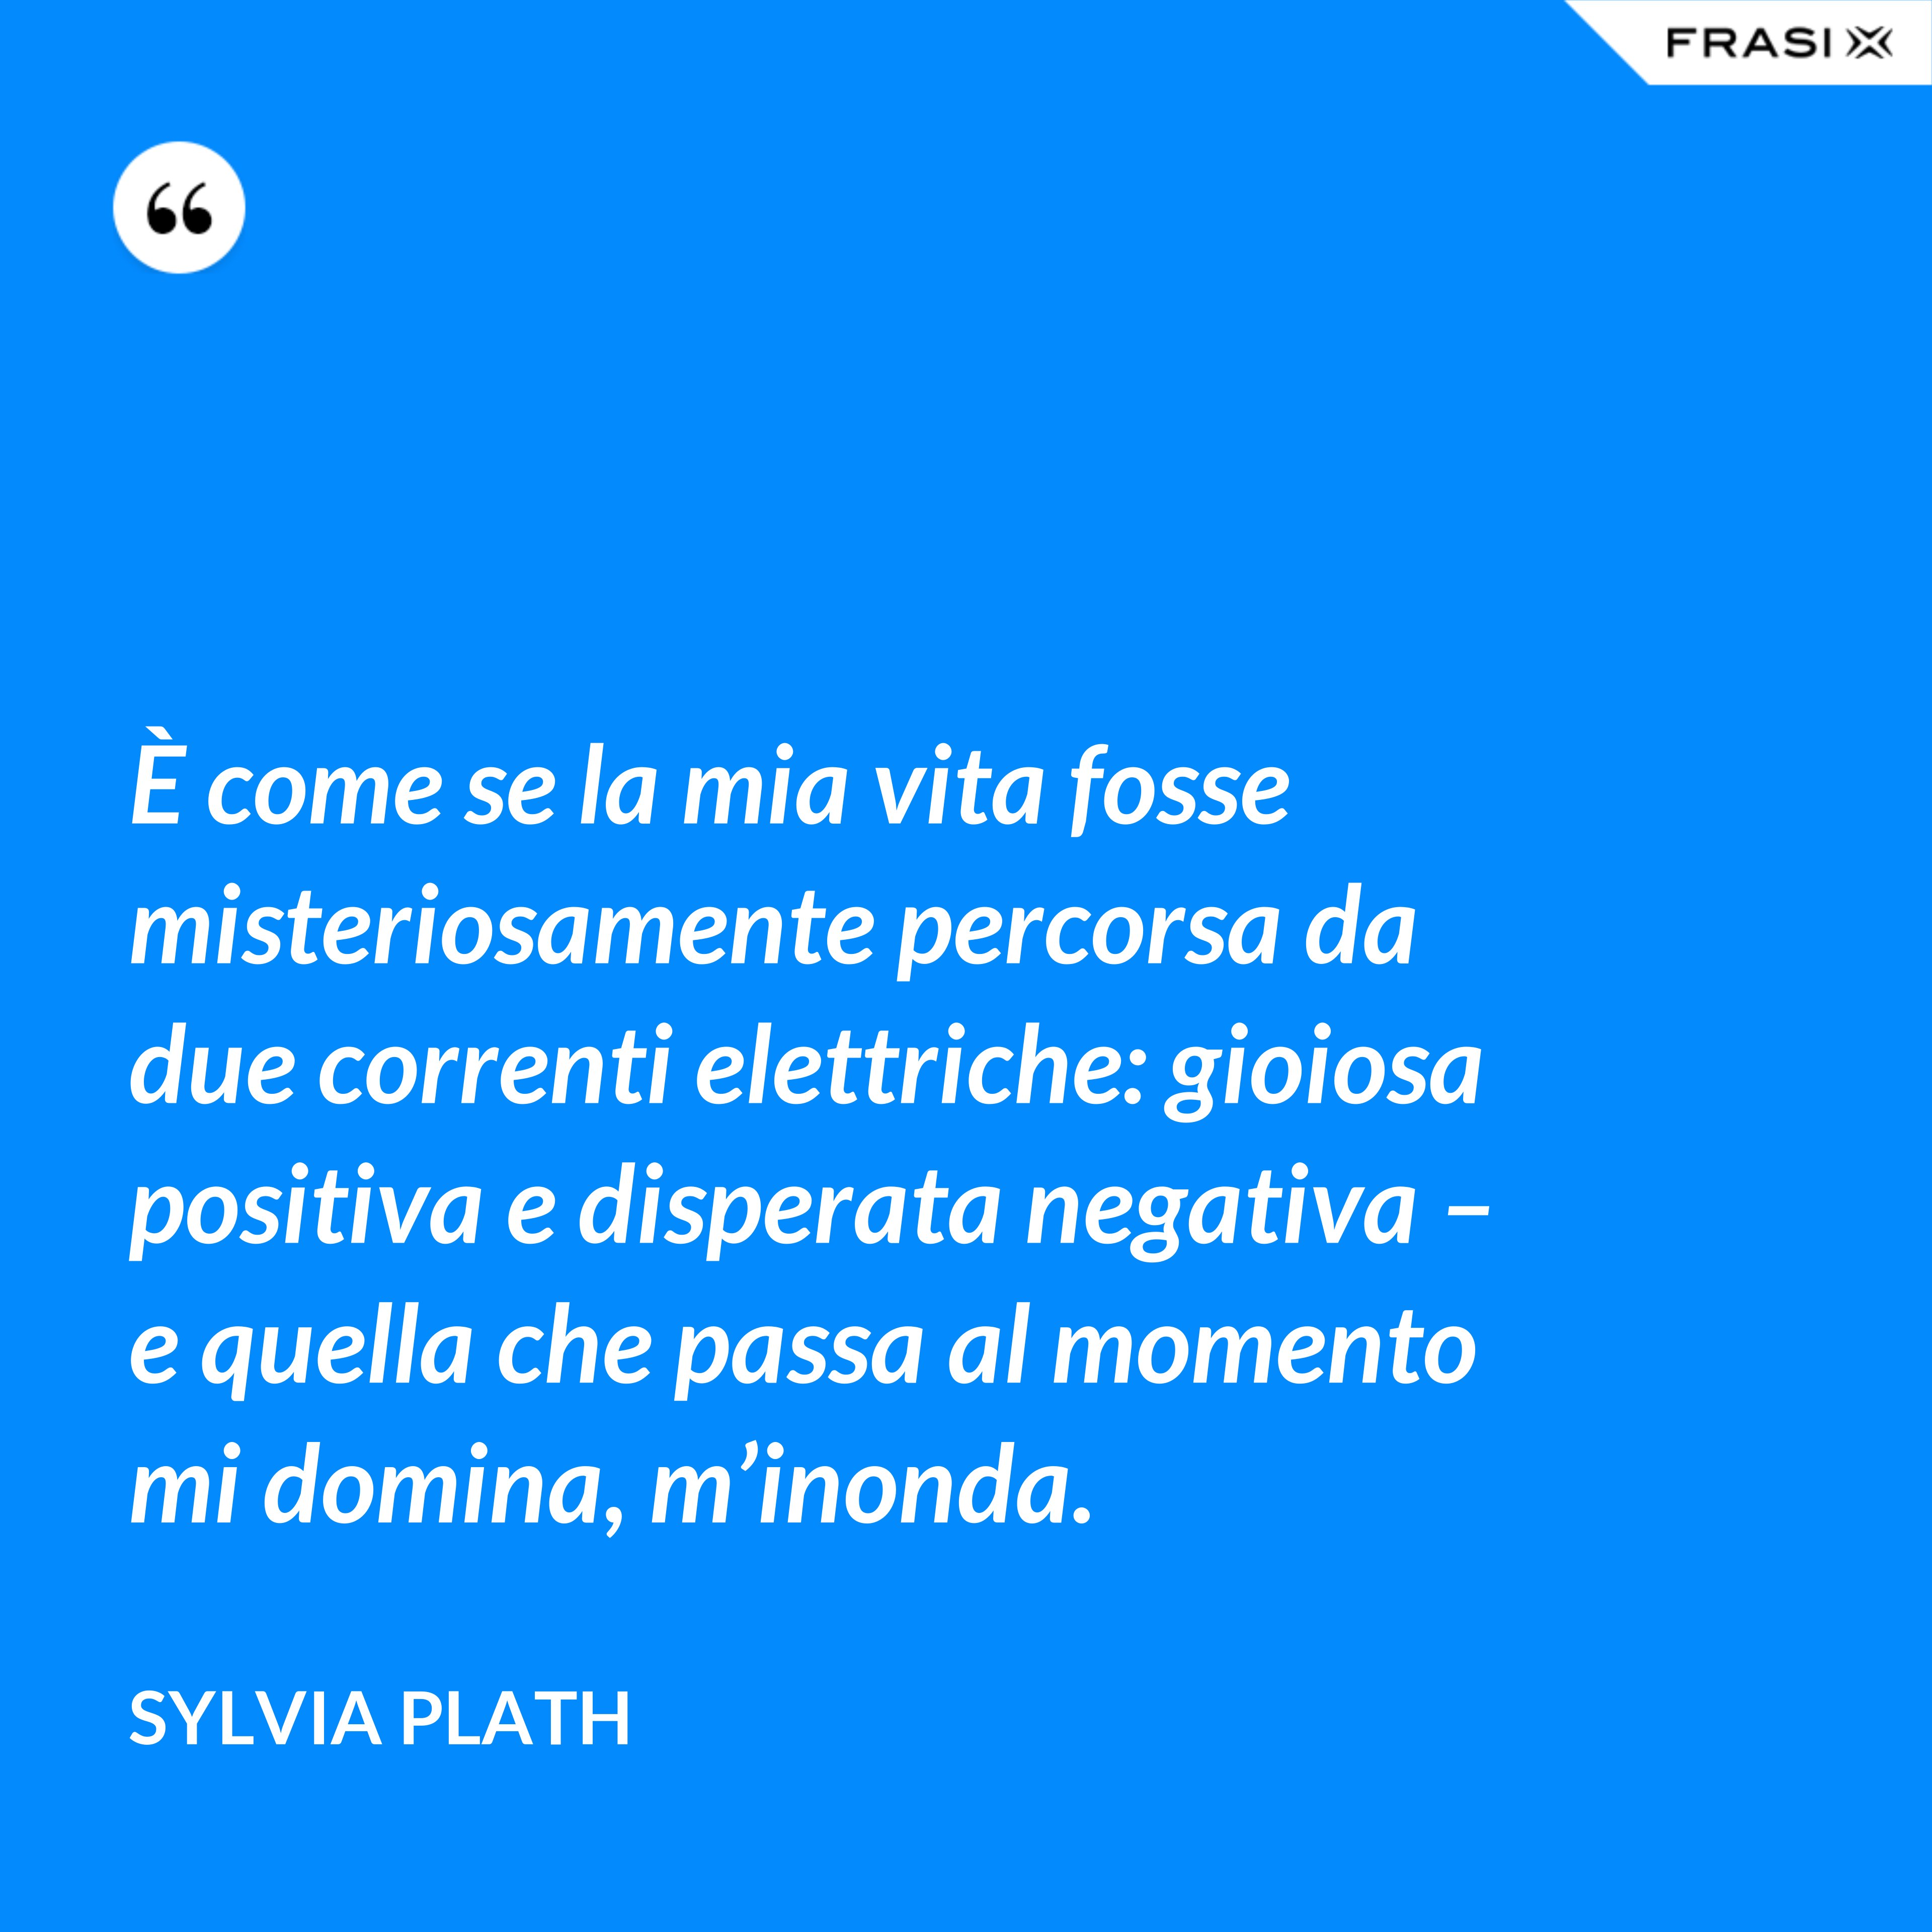 È come se la mia vita fosse misteriosamente percorsa da due correnti elettriche: gioiosa positiva e disperata negativa – e quella che passa al momento mi domina, m’inonda. - Sylvia Plath